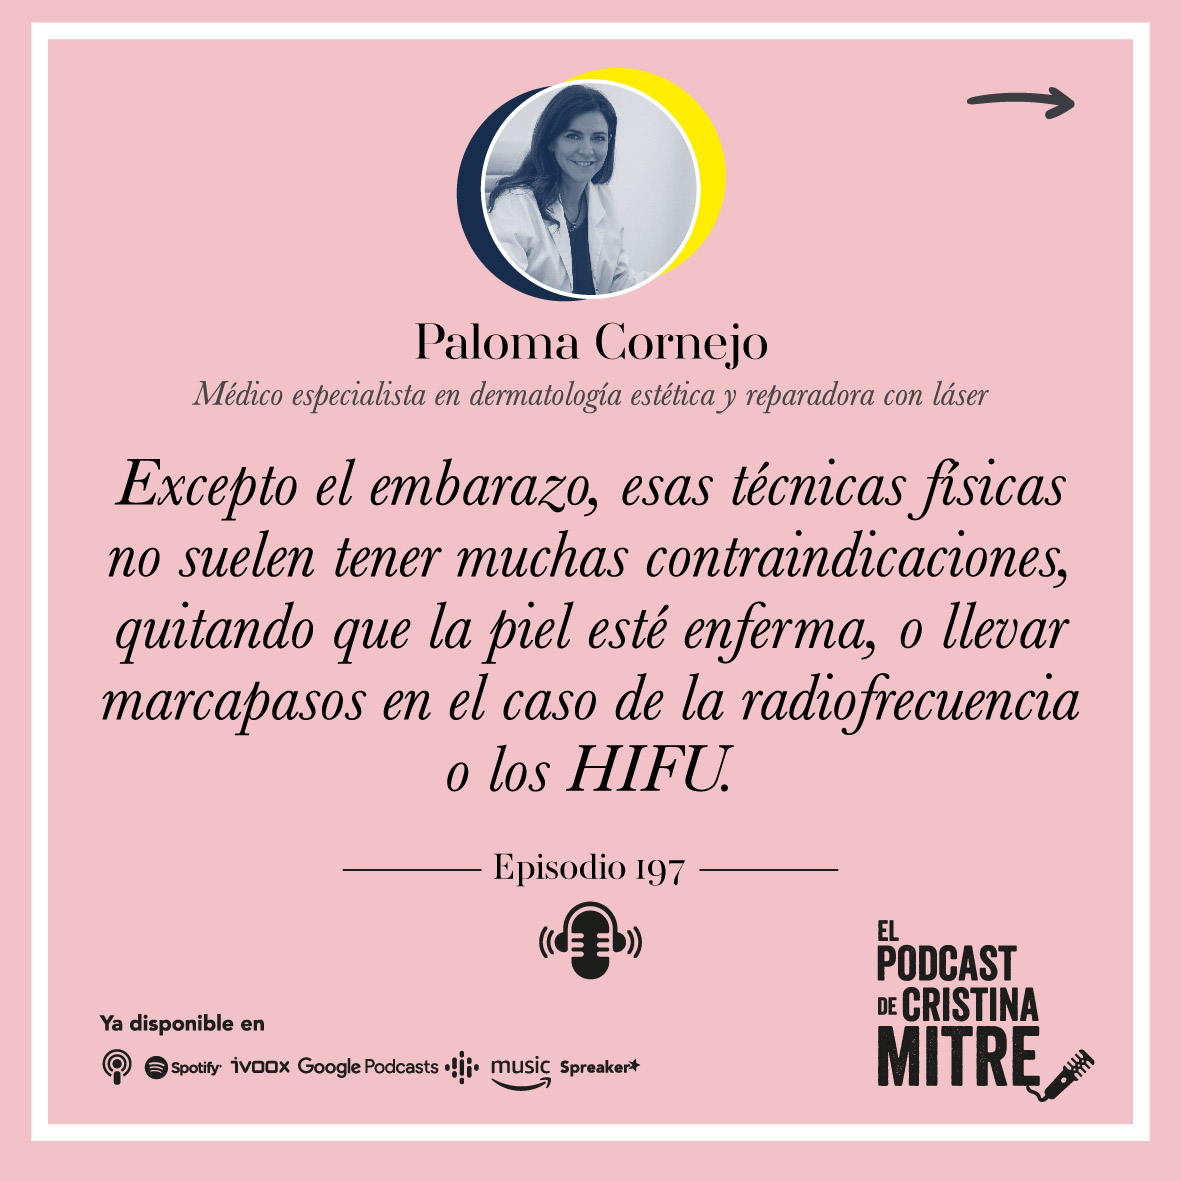 El Podcast de Cristina Mitre Paloma Cornejo tratamientos medicina estetica